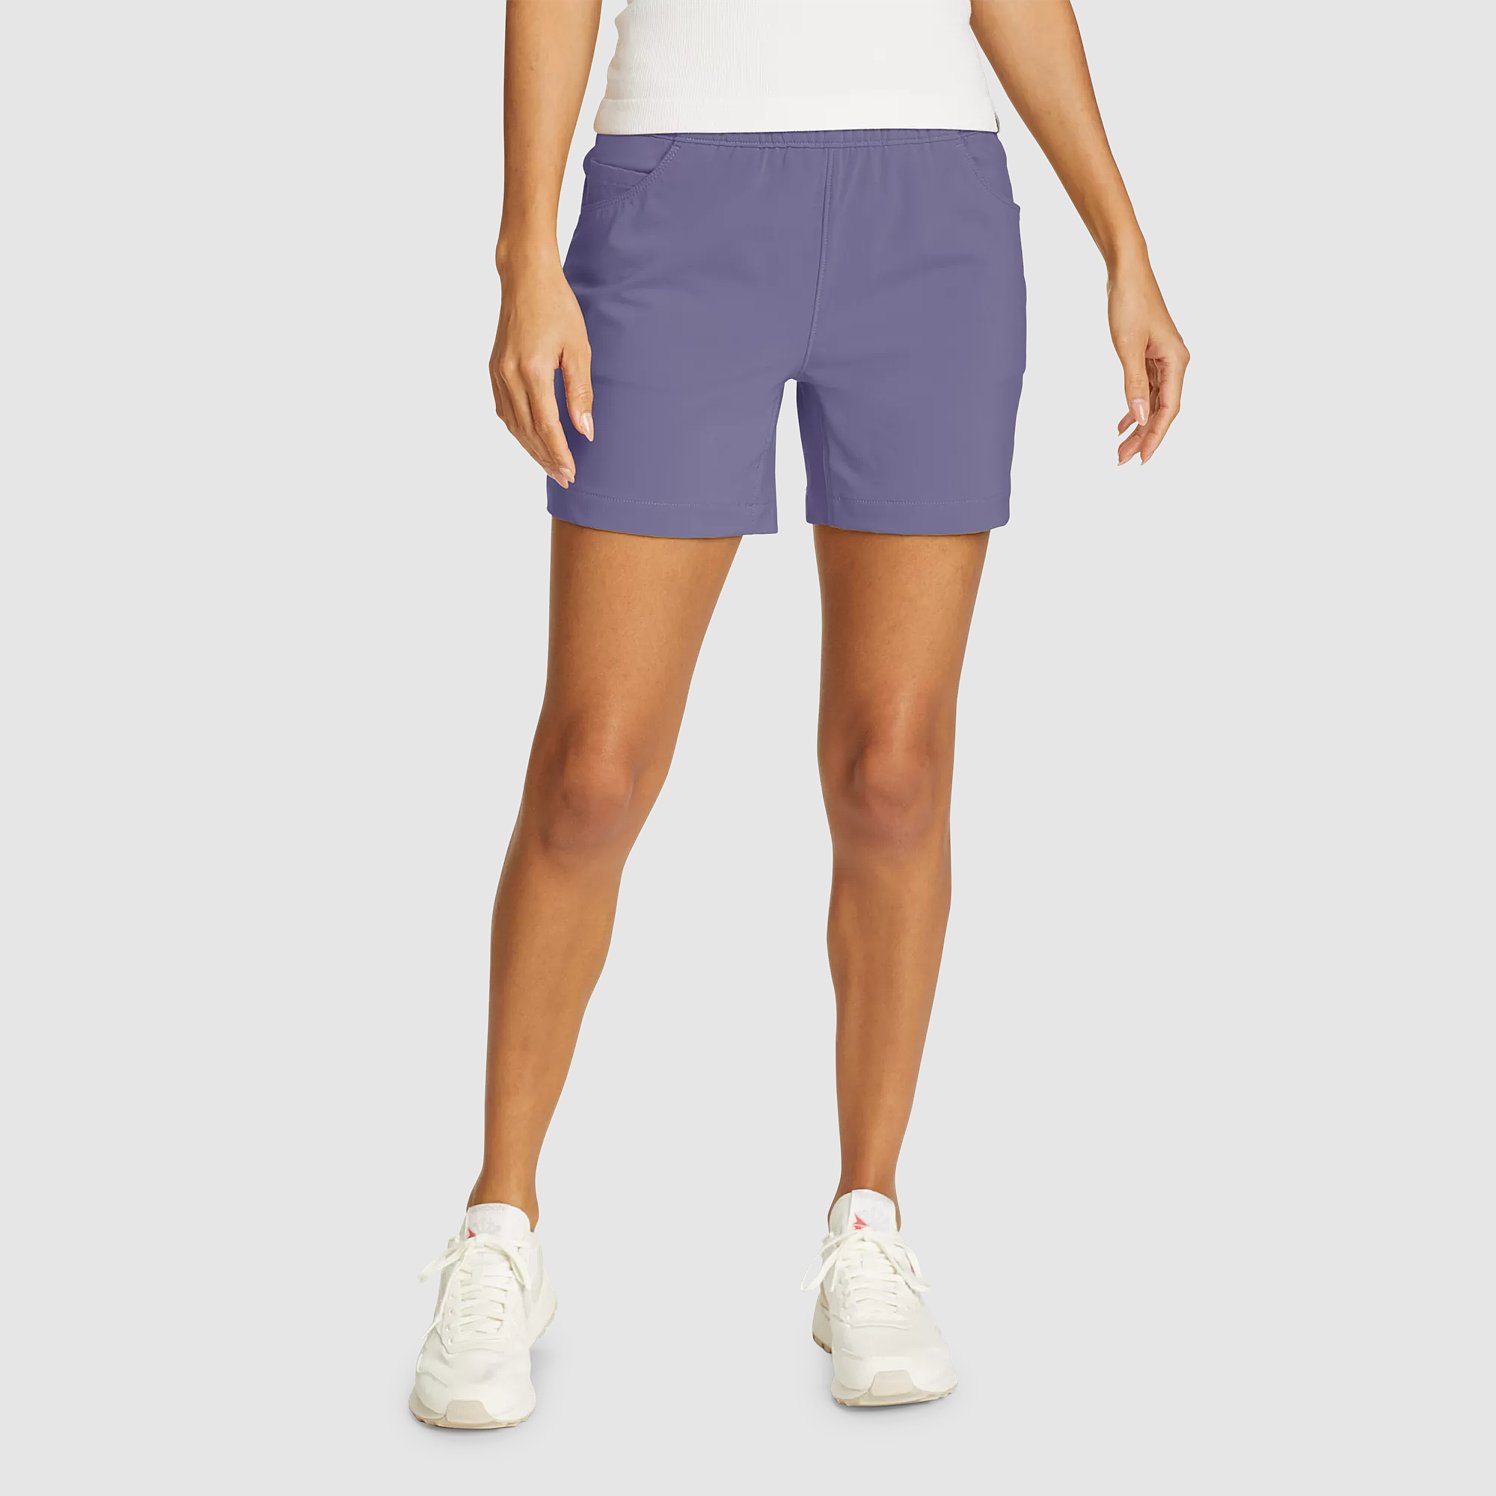 Eddie Bauer Women's ClimaTrail Hiking Shorts - Dark Mulberry - Size 10